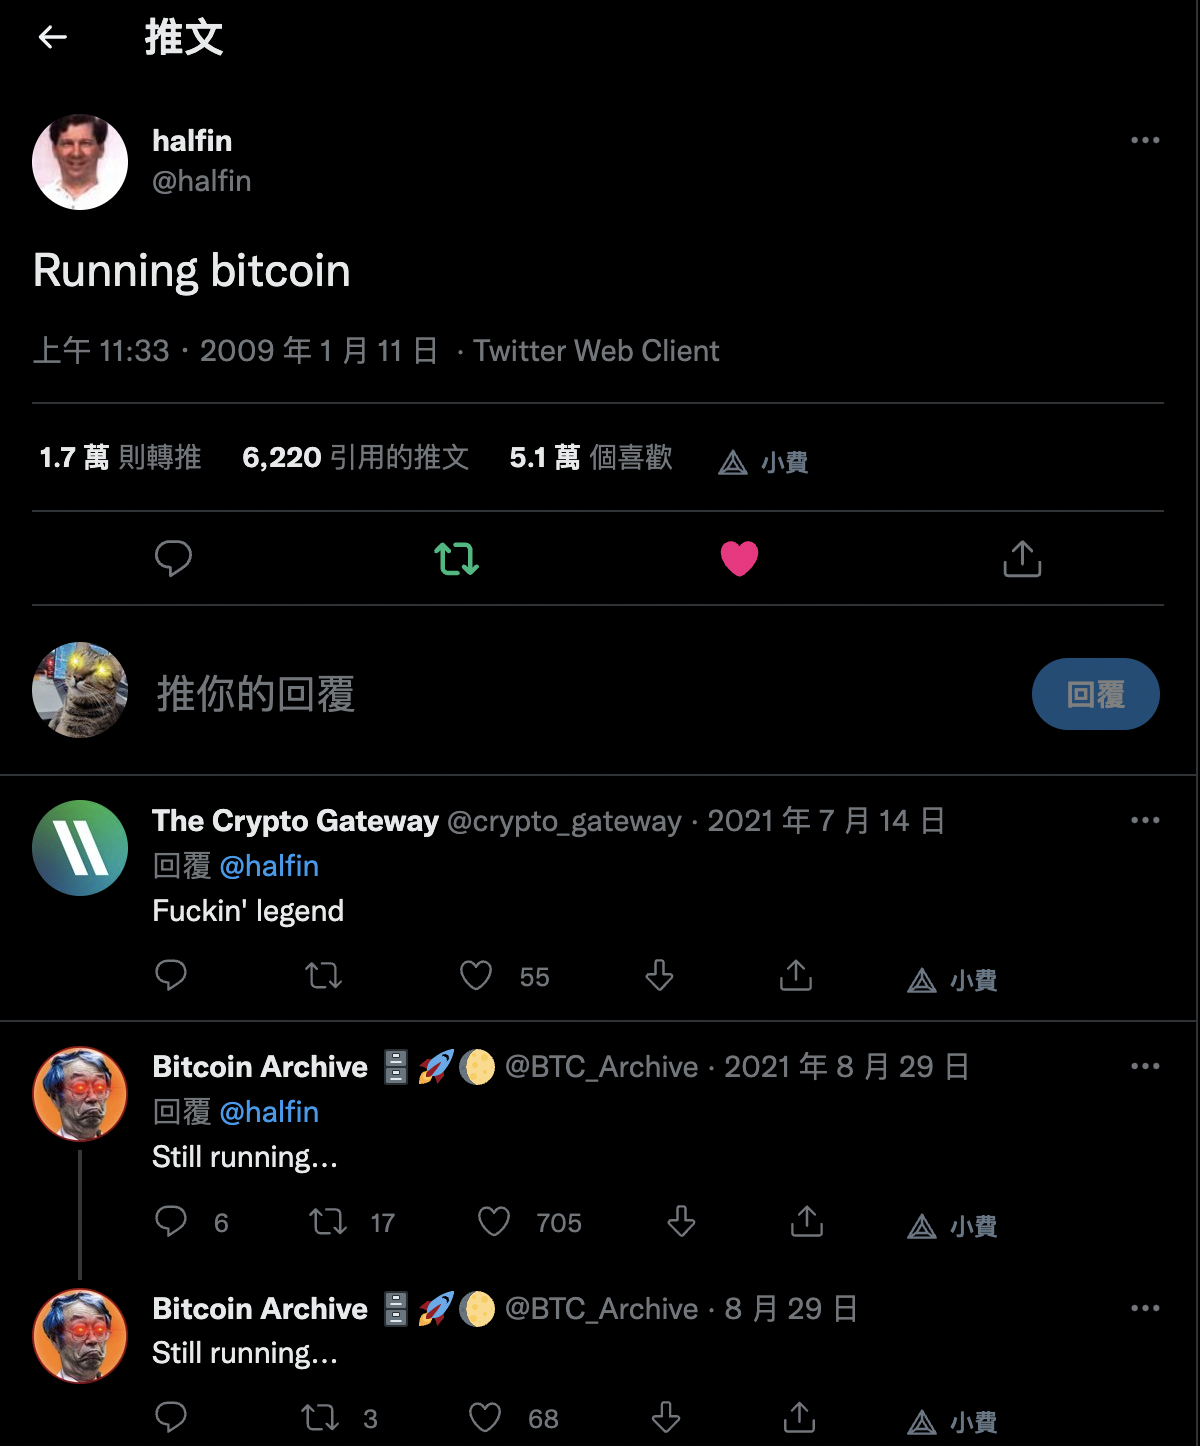 first tweet about Bitcoin